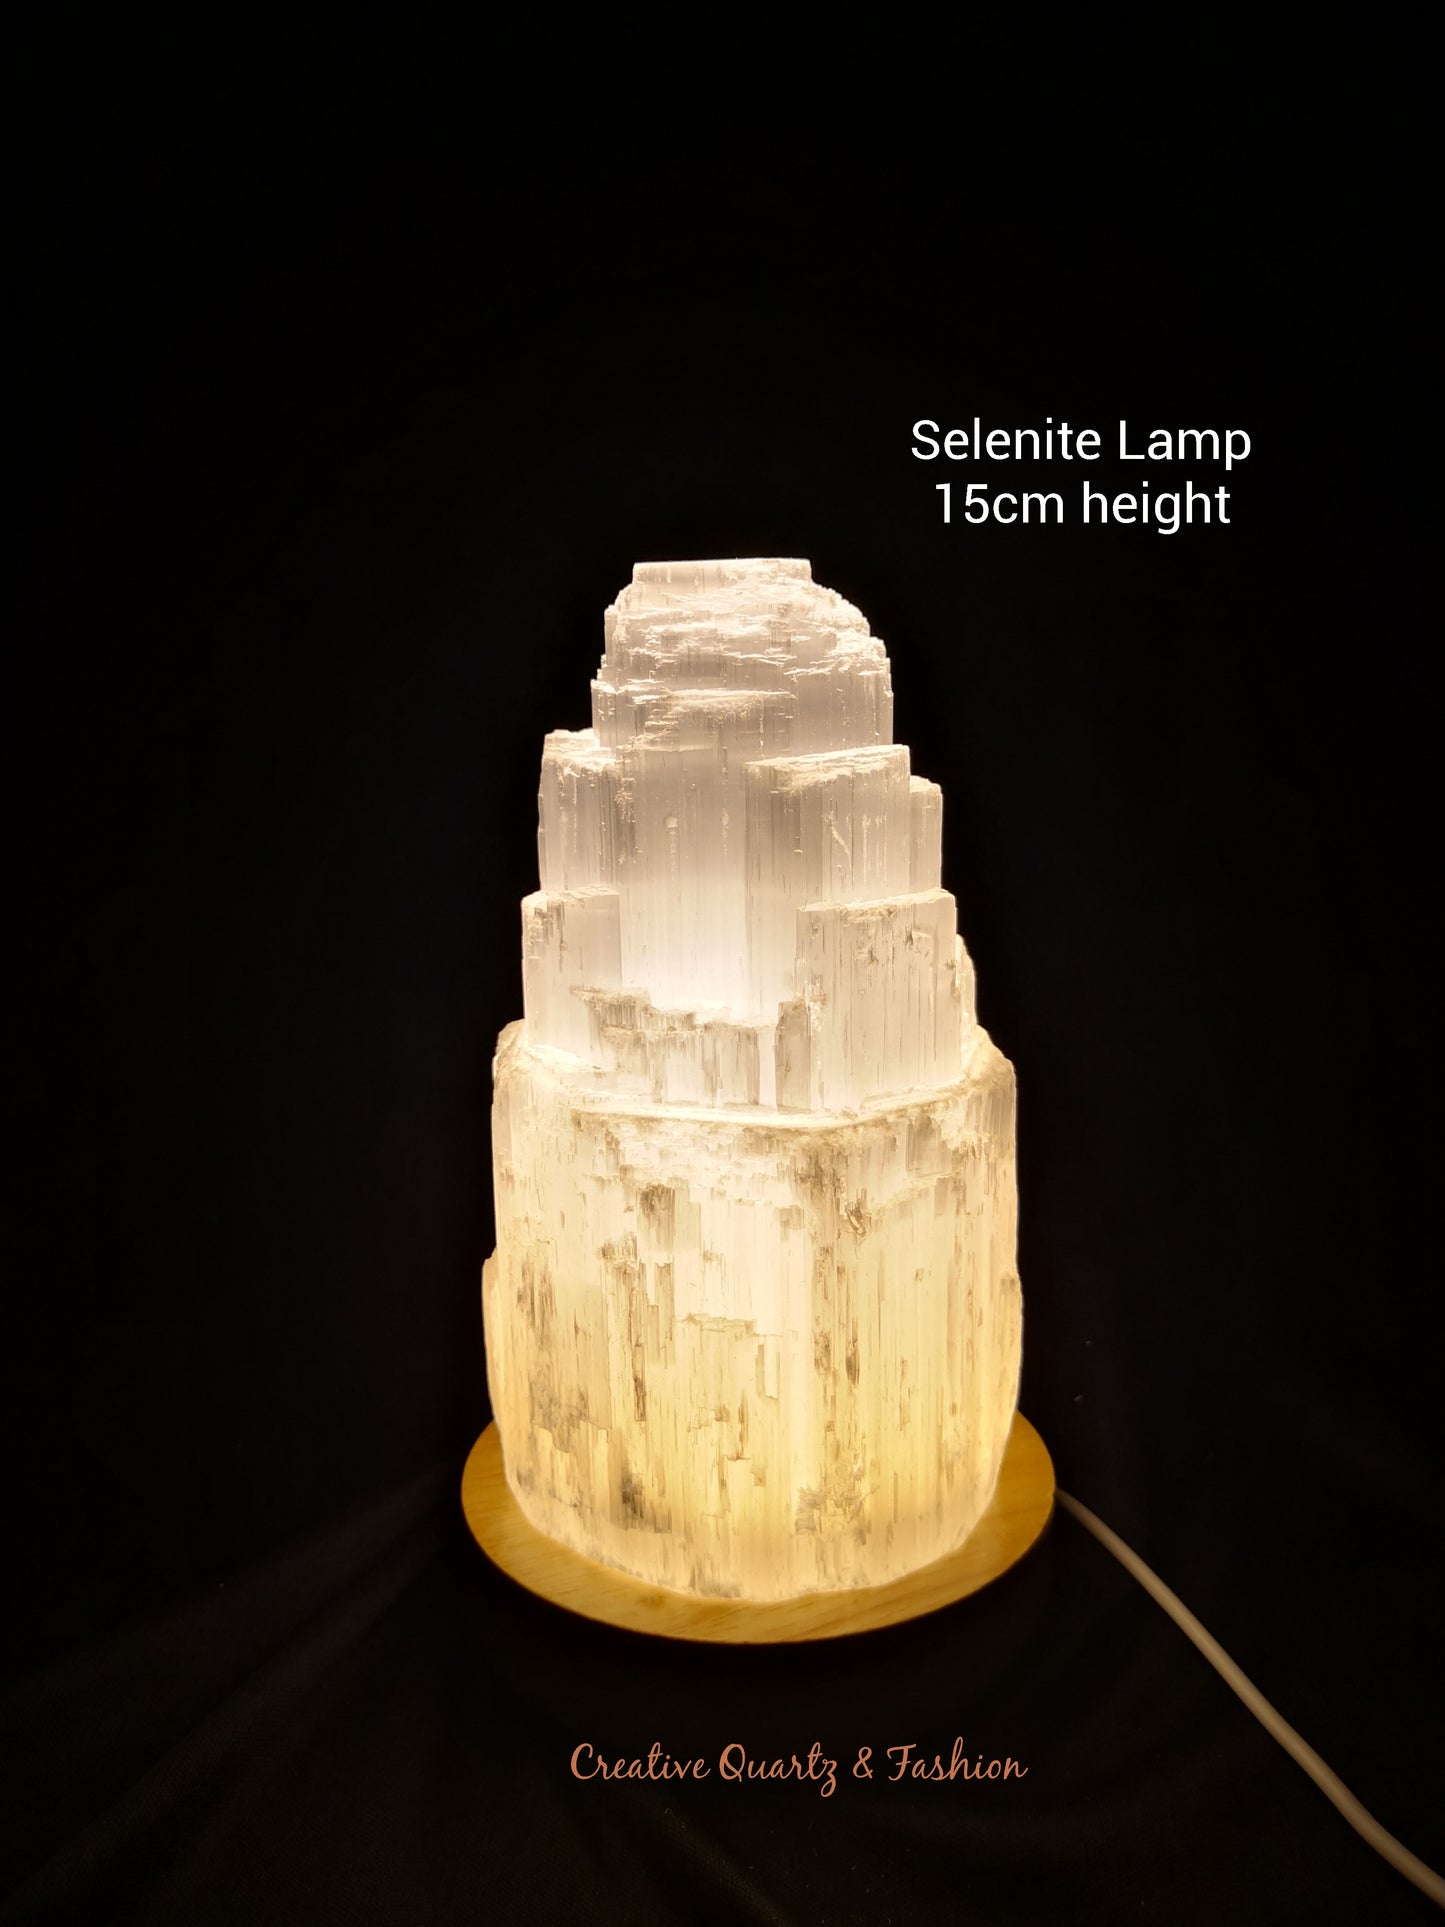 Selenite Lamp Small